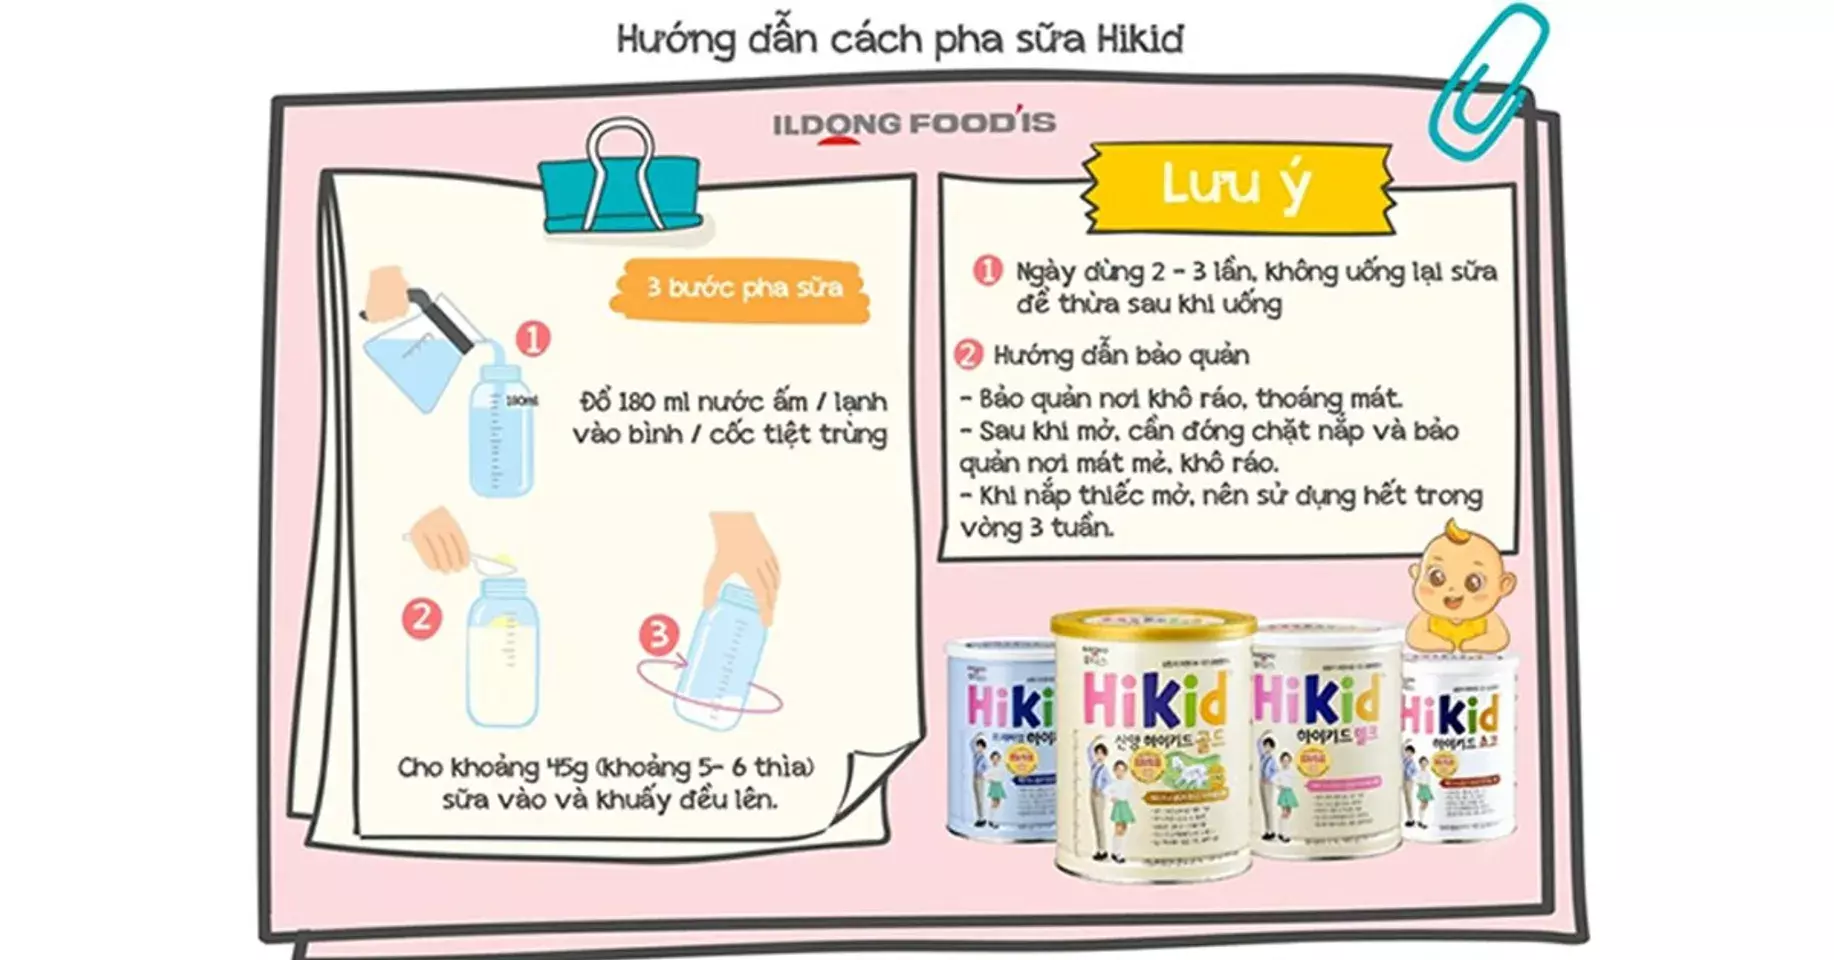 Sữa Hikid hương vani có tốt cho con bạn?